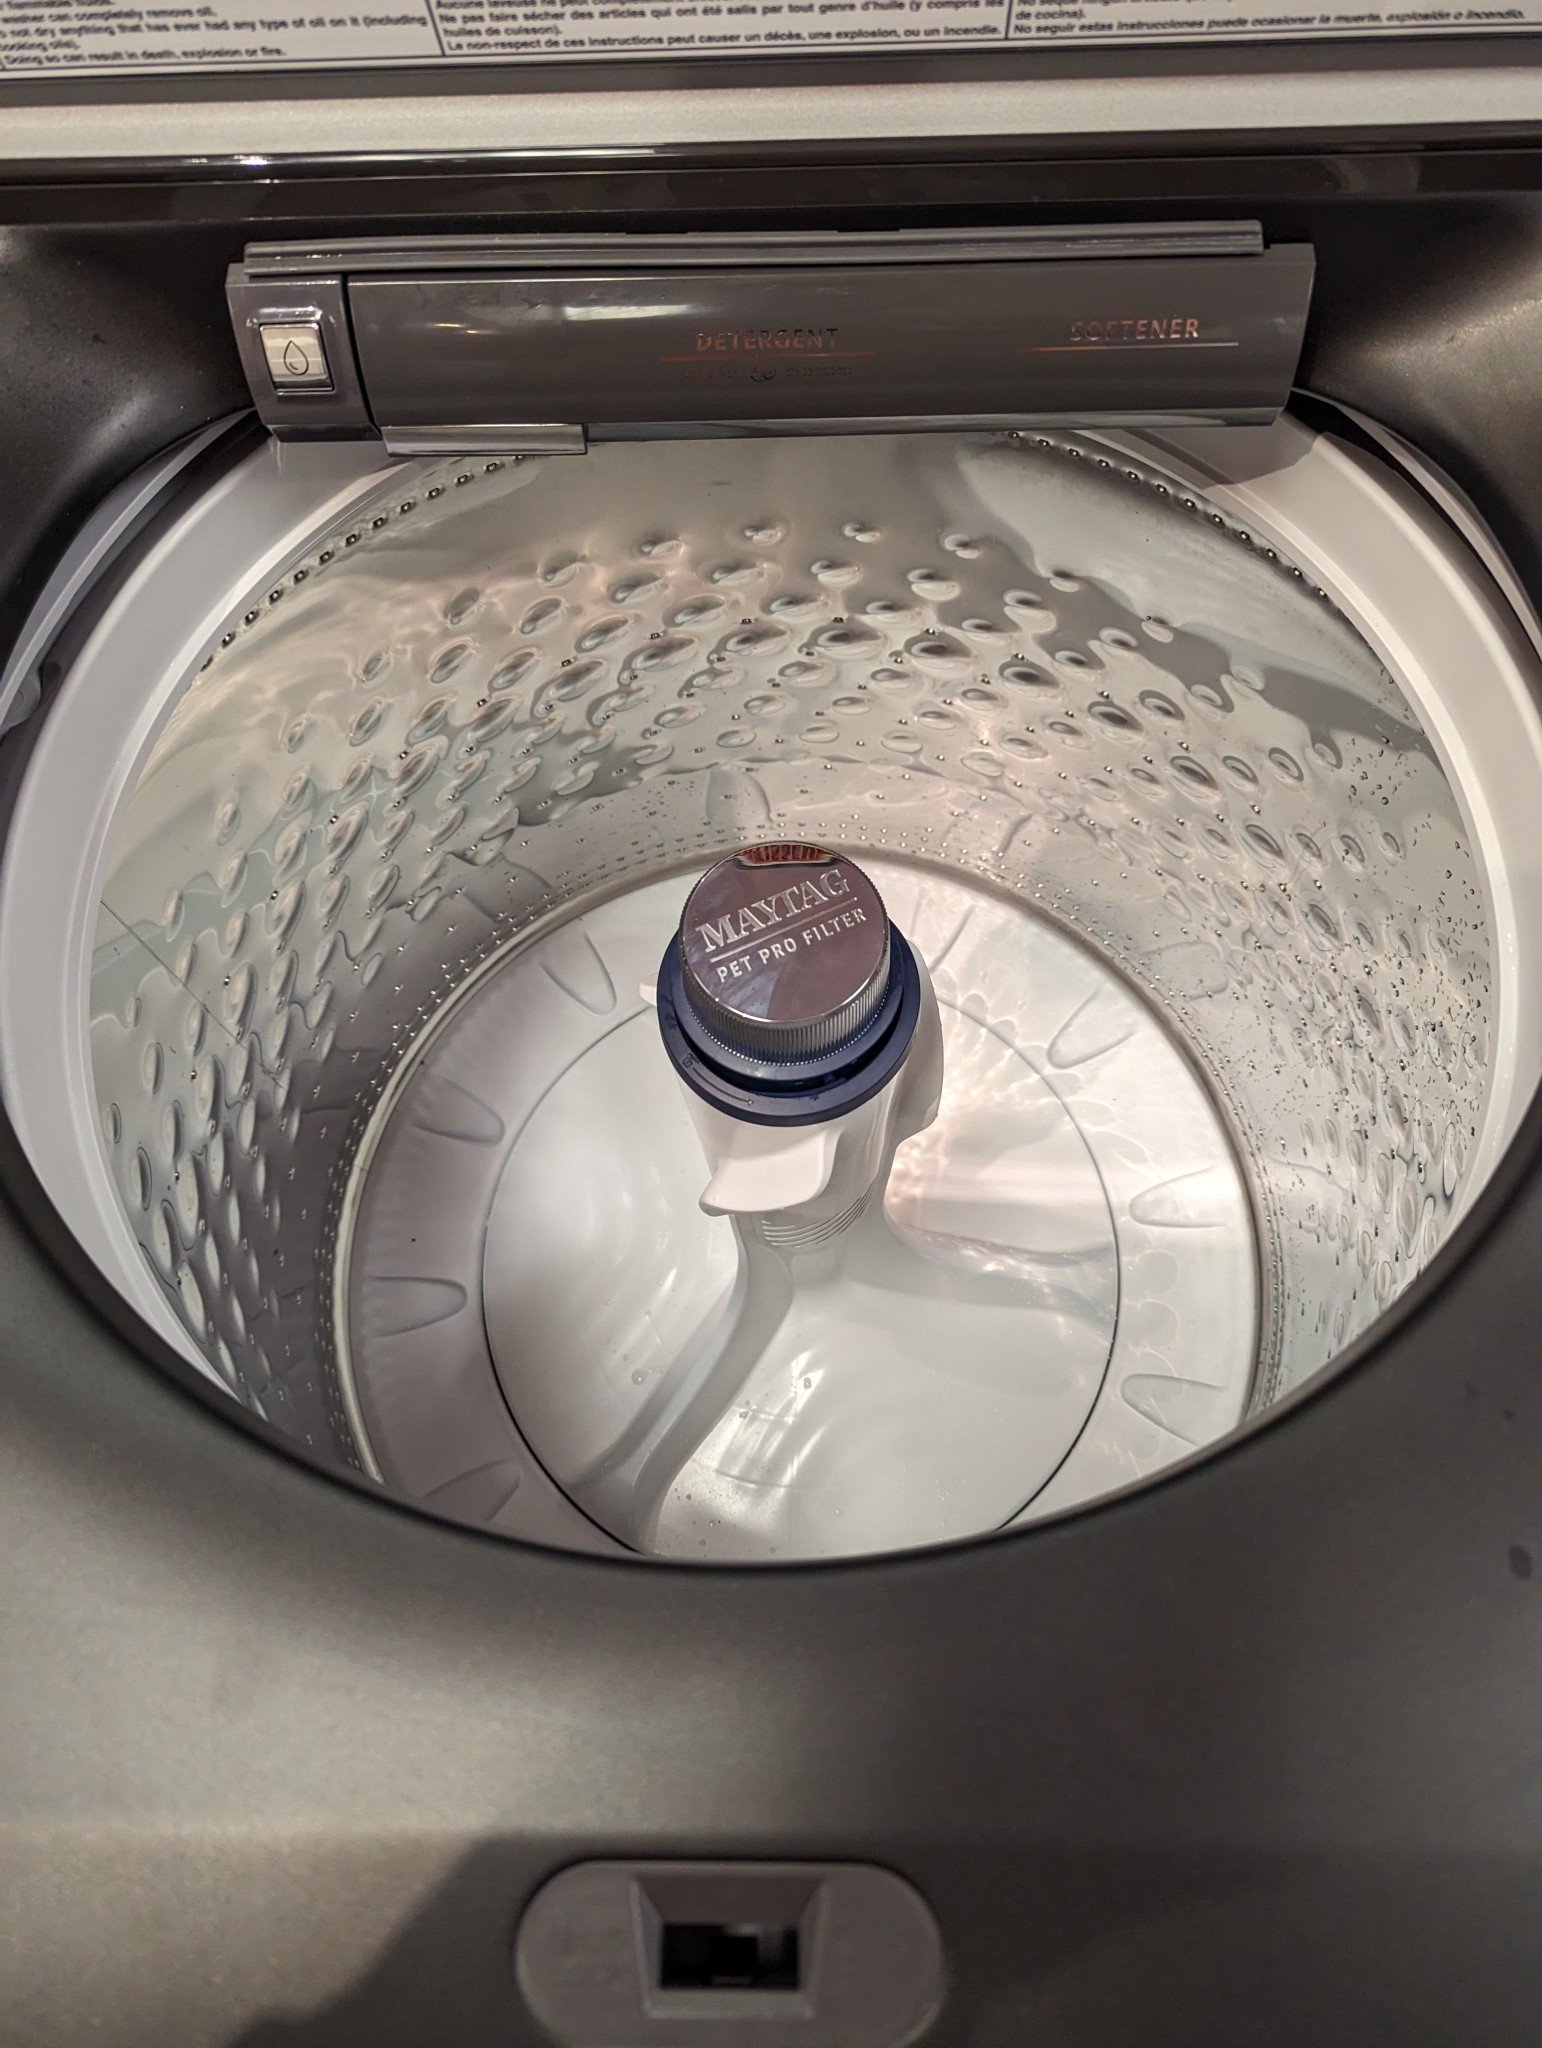 Giantex Portable Washing Machine 1.34 Cu.ft Review & User Manual